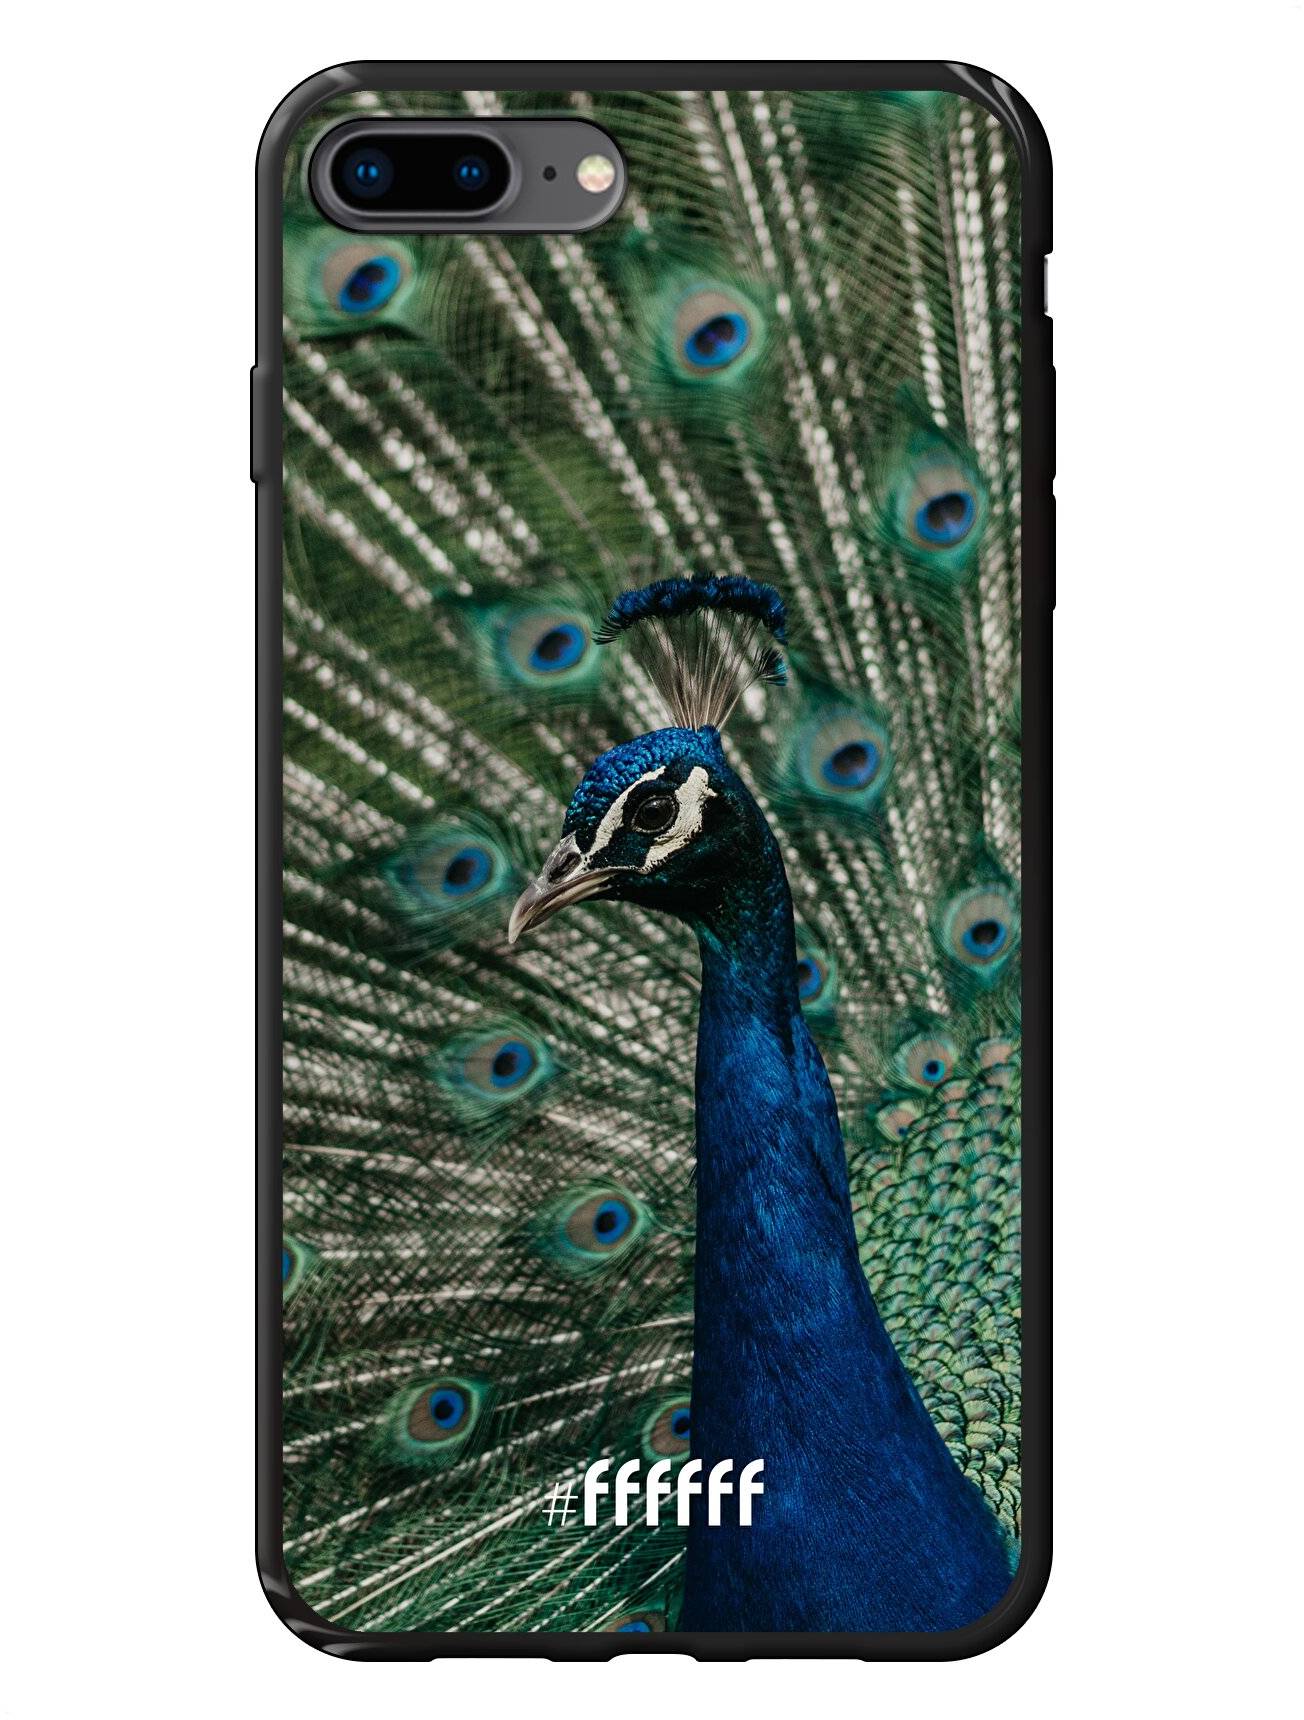 Peacock iPhone 7 Plus